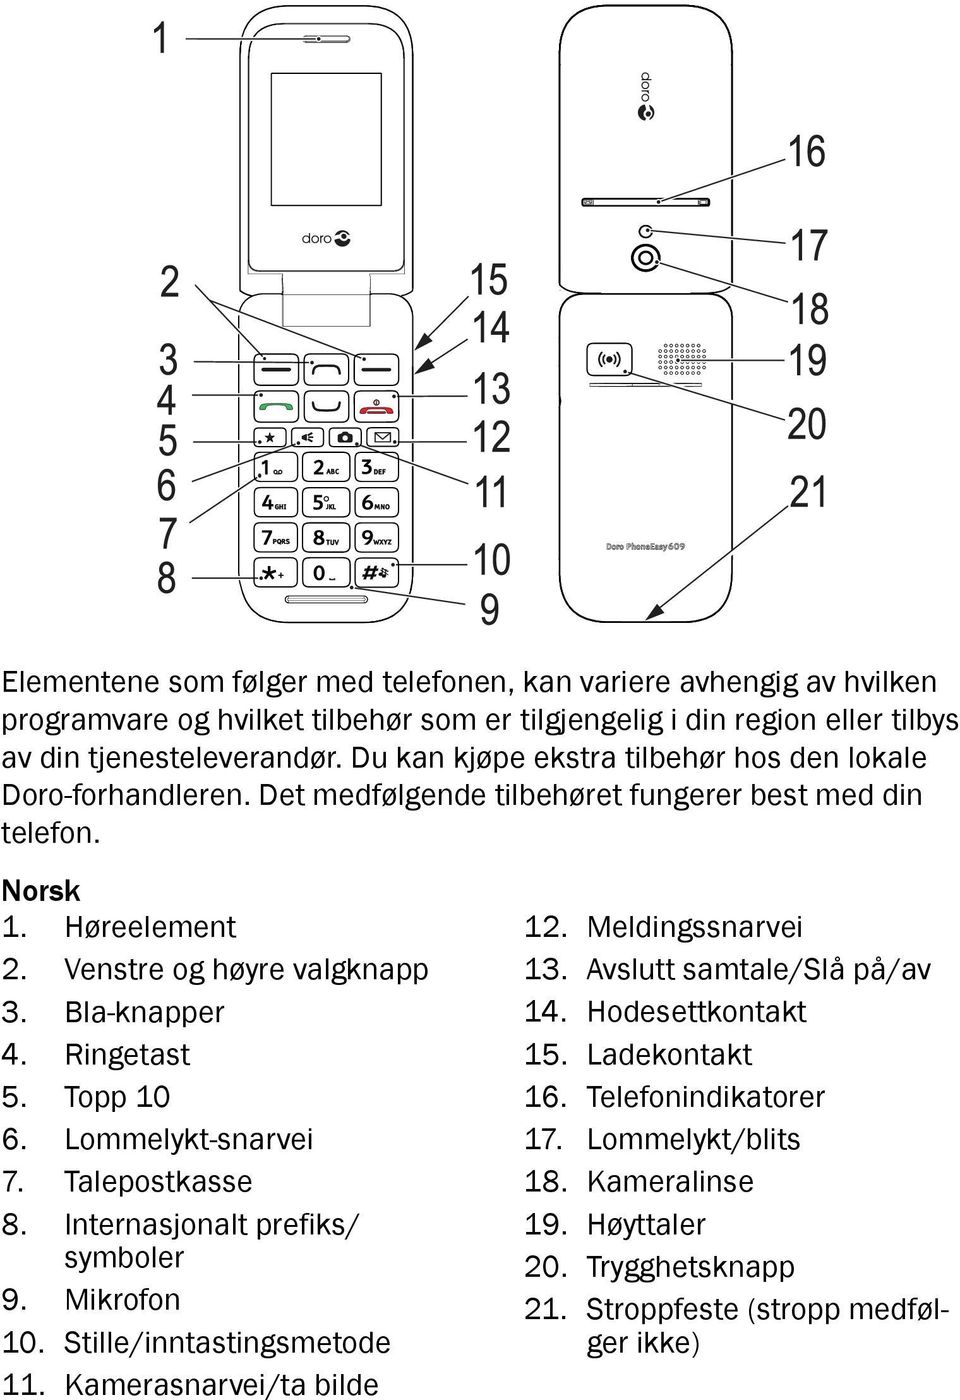 Det medfølgende tilbehøret fungerer best med din telefon. Norsk 1. Høreelement 2. Venstre og høyre valgknapp 3. Bla-knapper 4. Ringetast 5. Topp 10 6. Lommelykt-snarvei 7. Talepostkasse 8.